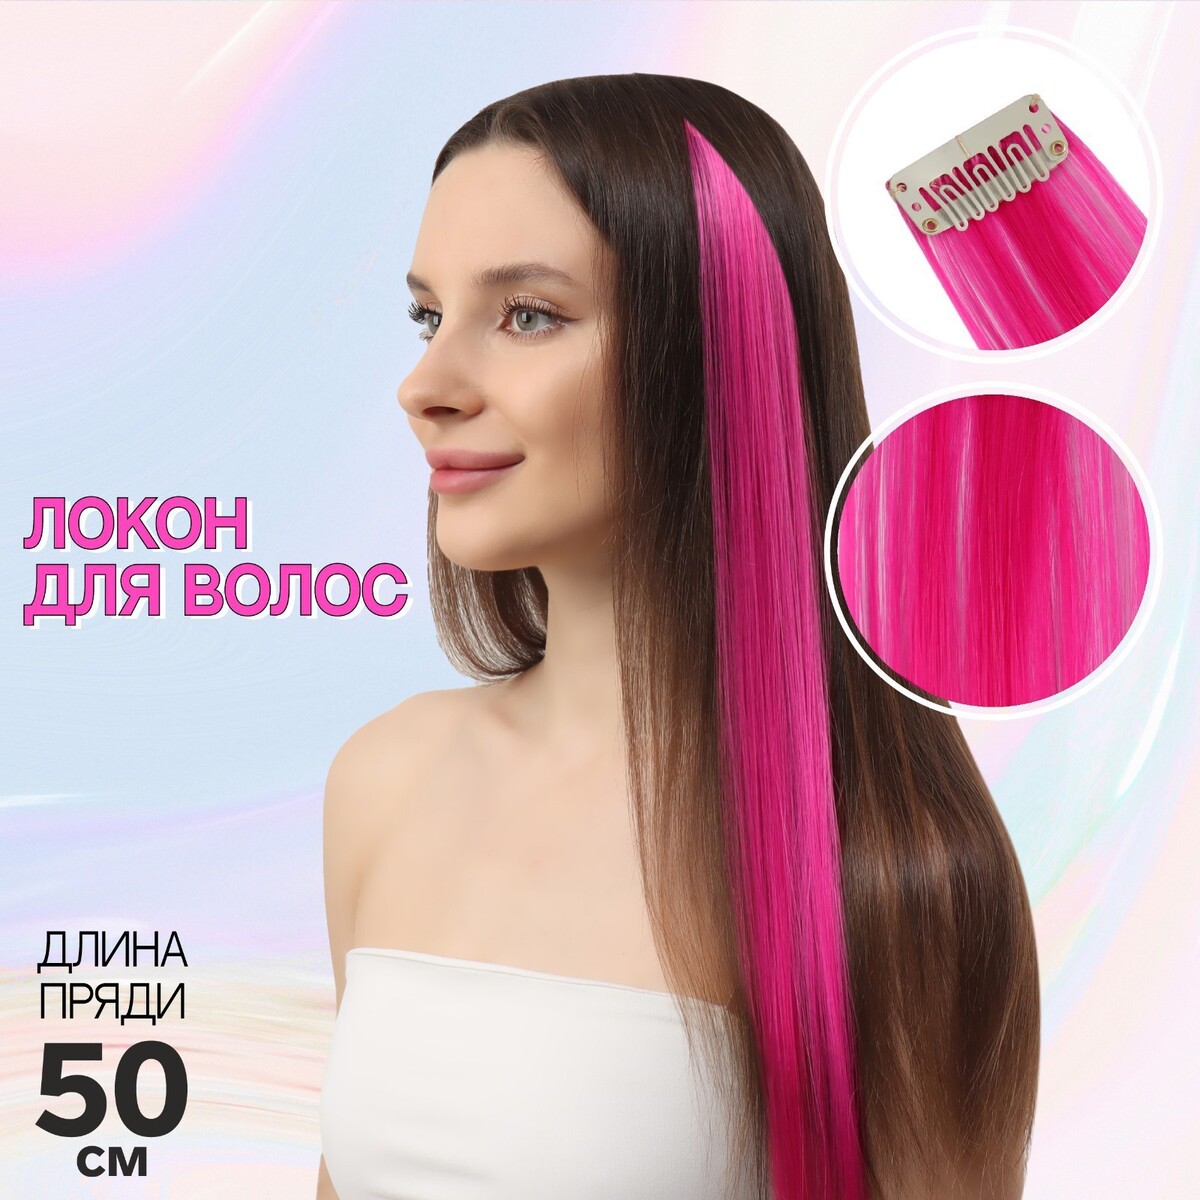 Локон накладной, прямой волос, на заколке, 50 см, 5 гр, цвет розовый локон накладной бантик прямой волос на заколке 32 см микс